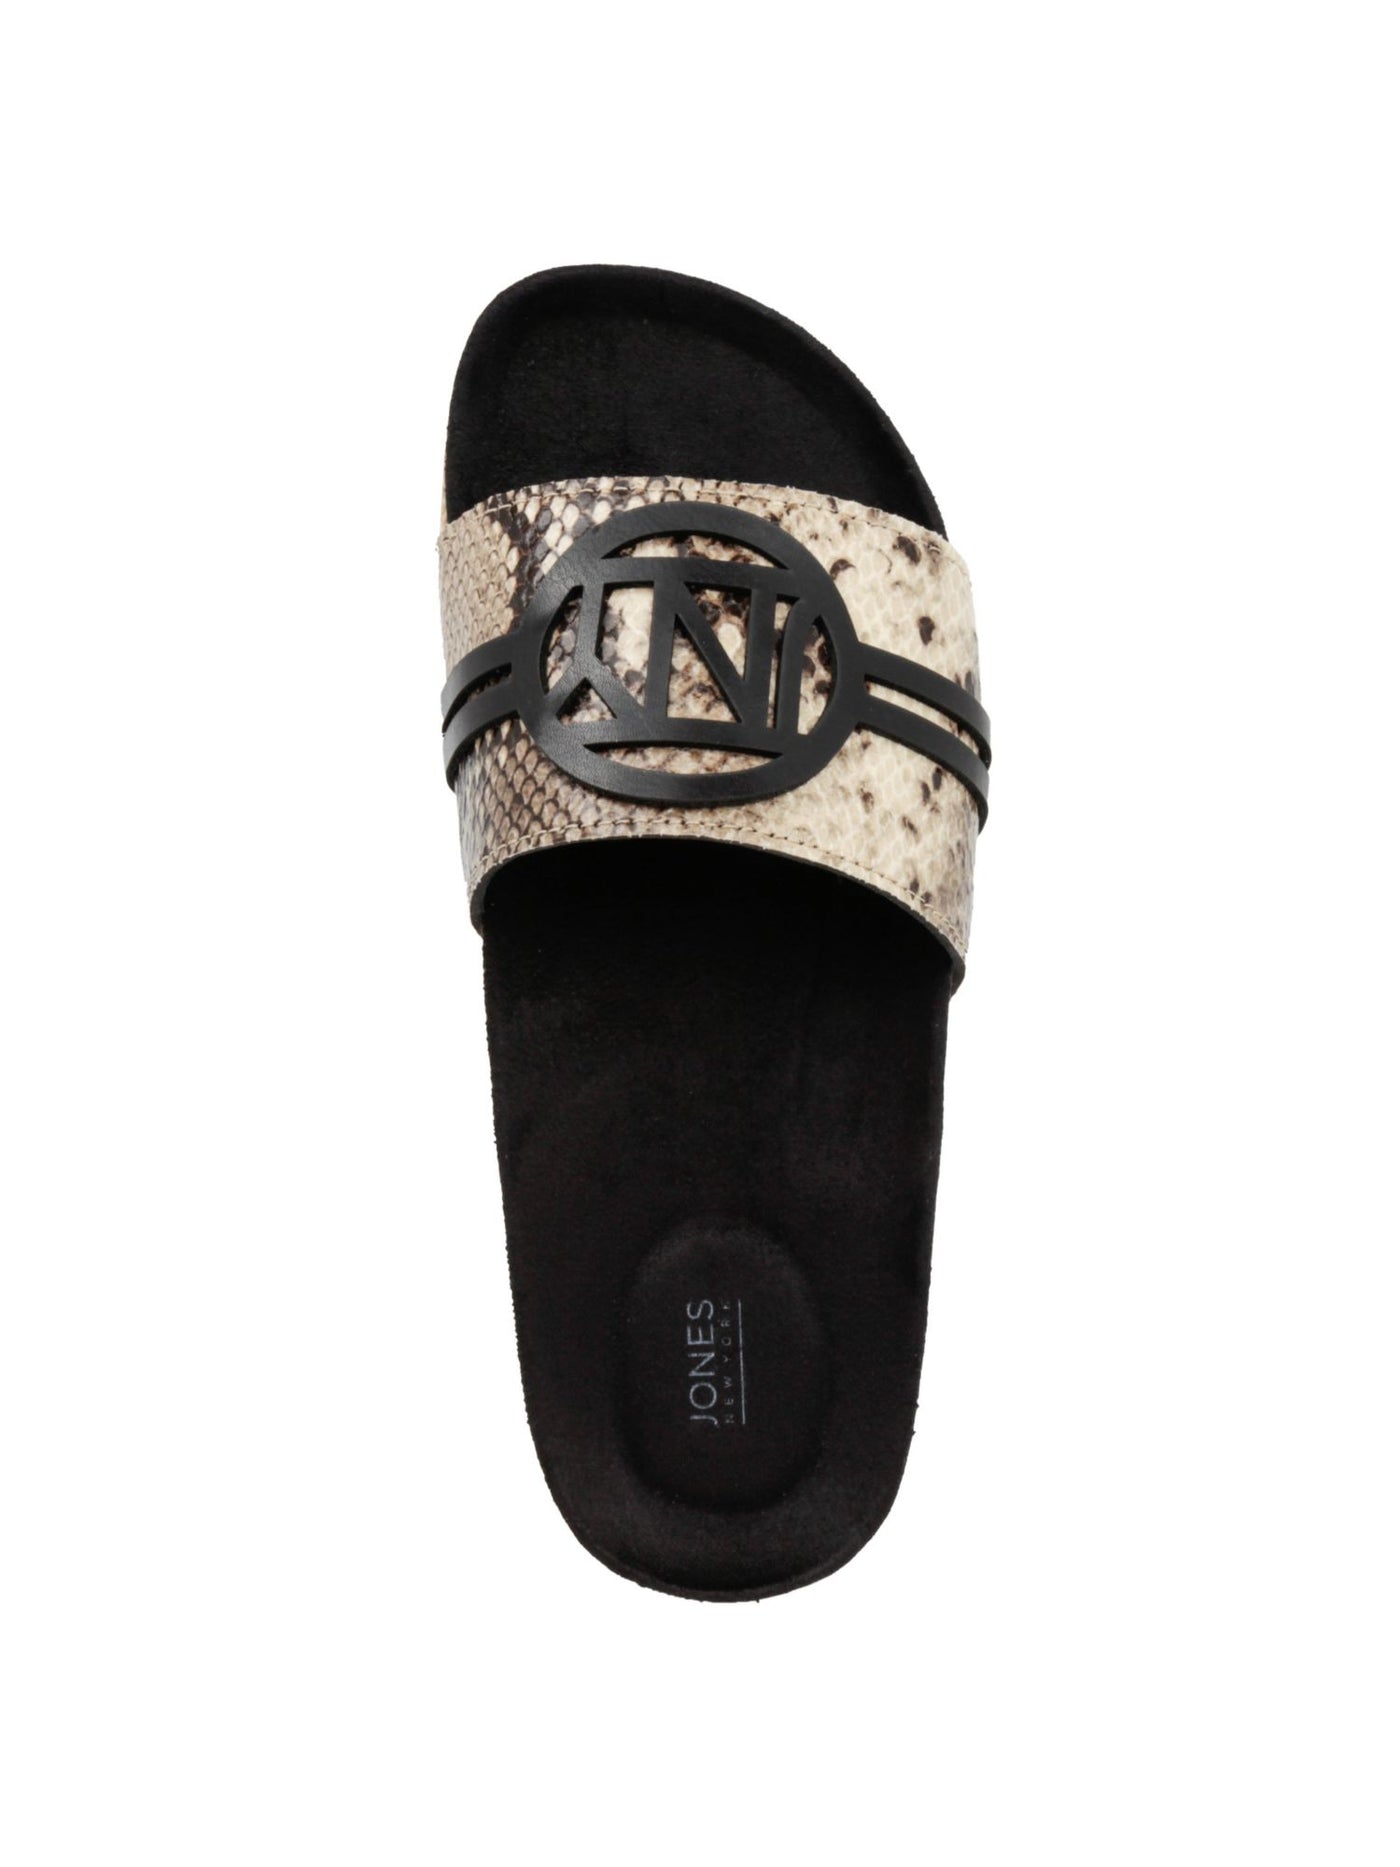 JONES NY Womens Black Snake Logo Comfort Wenette Round Toe Slip On Slide Sandals Shoes 9 H